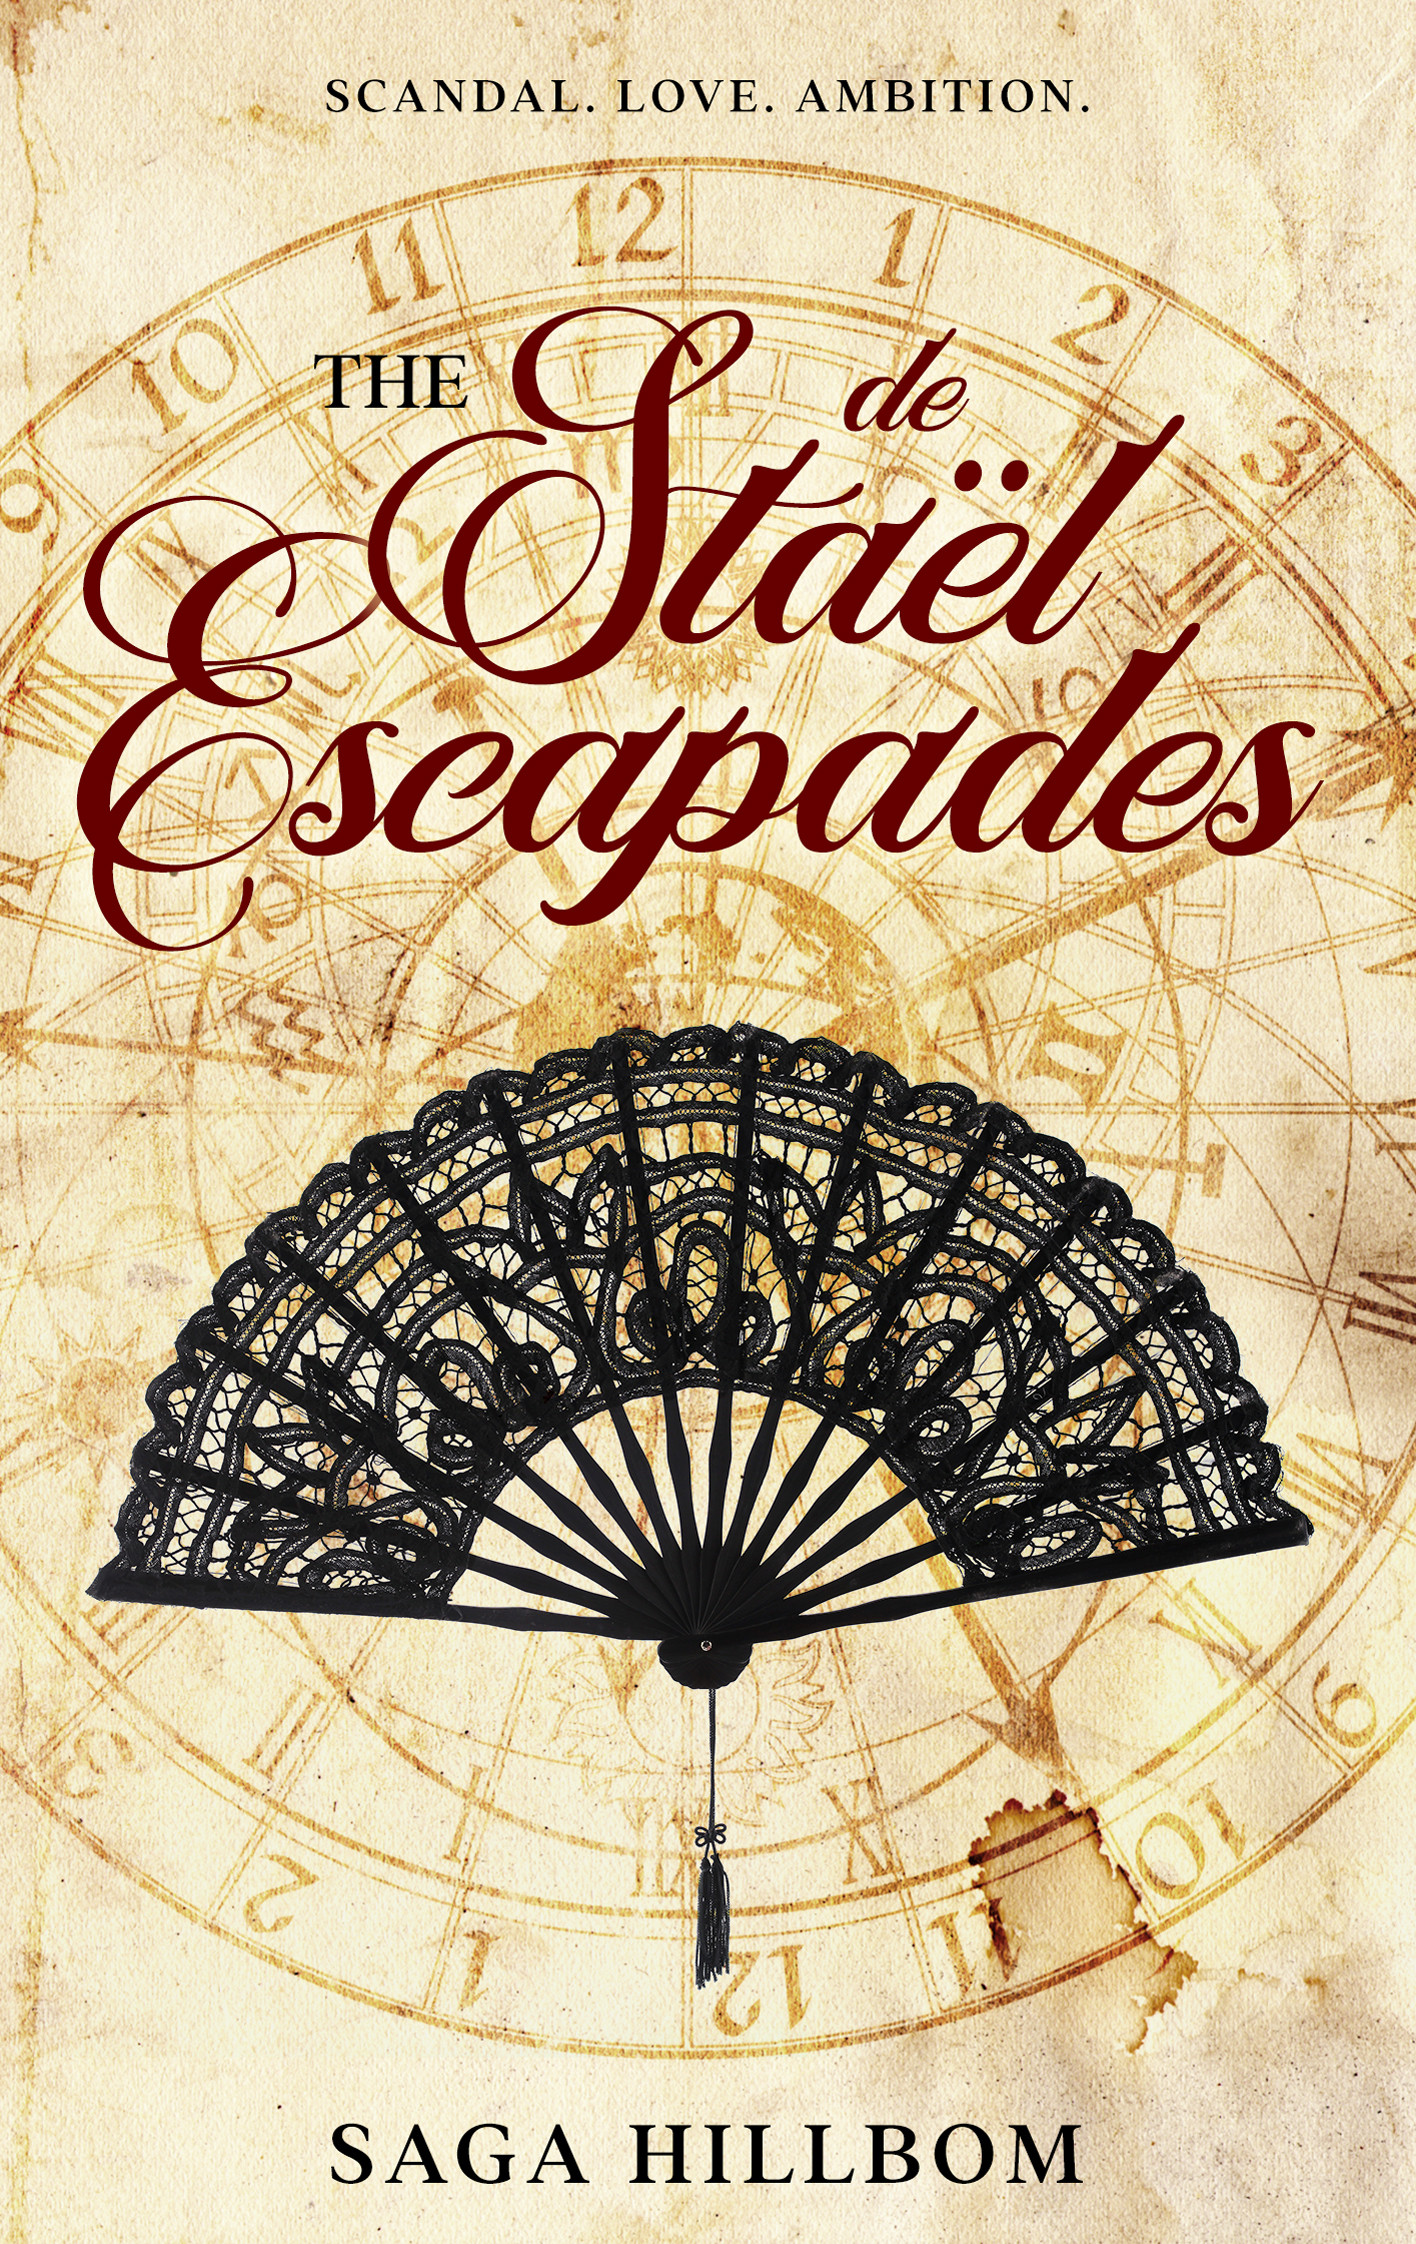 The De Stael Escapades